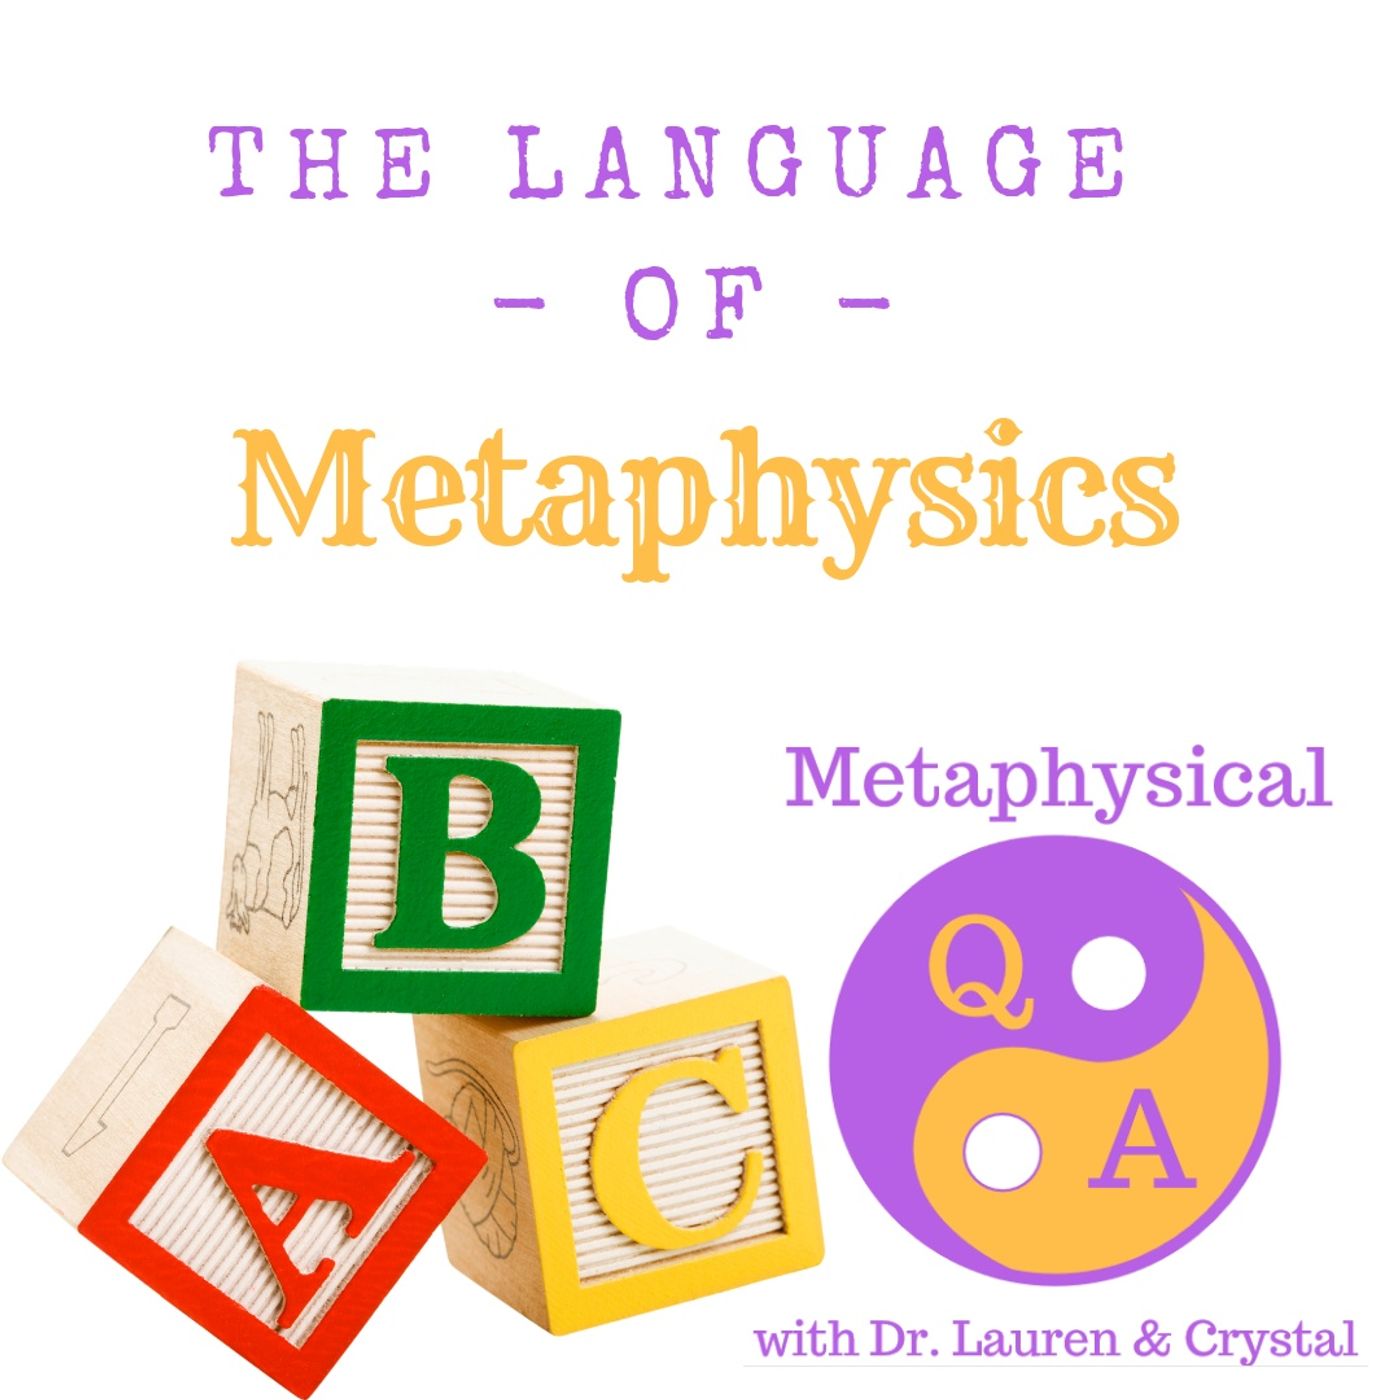 The Language of Metaphysics